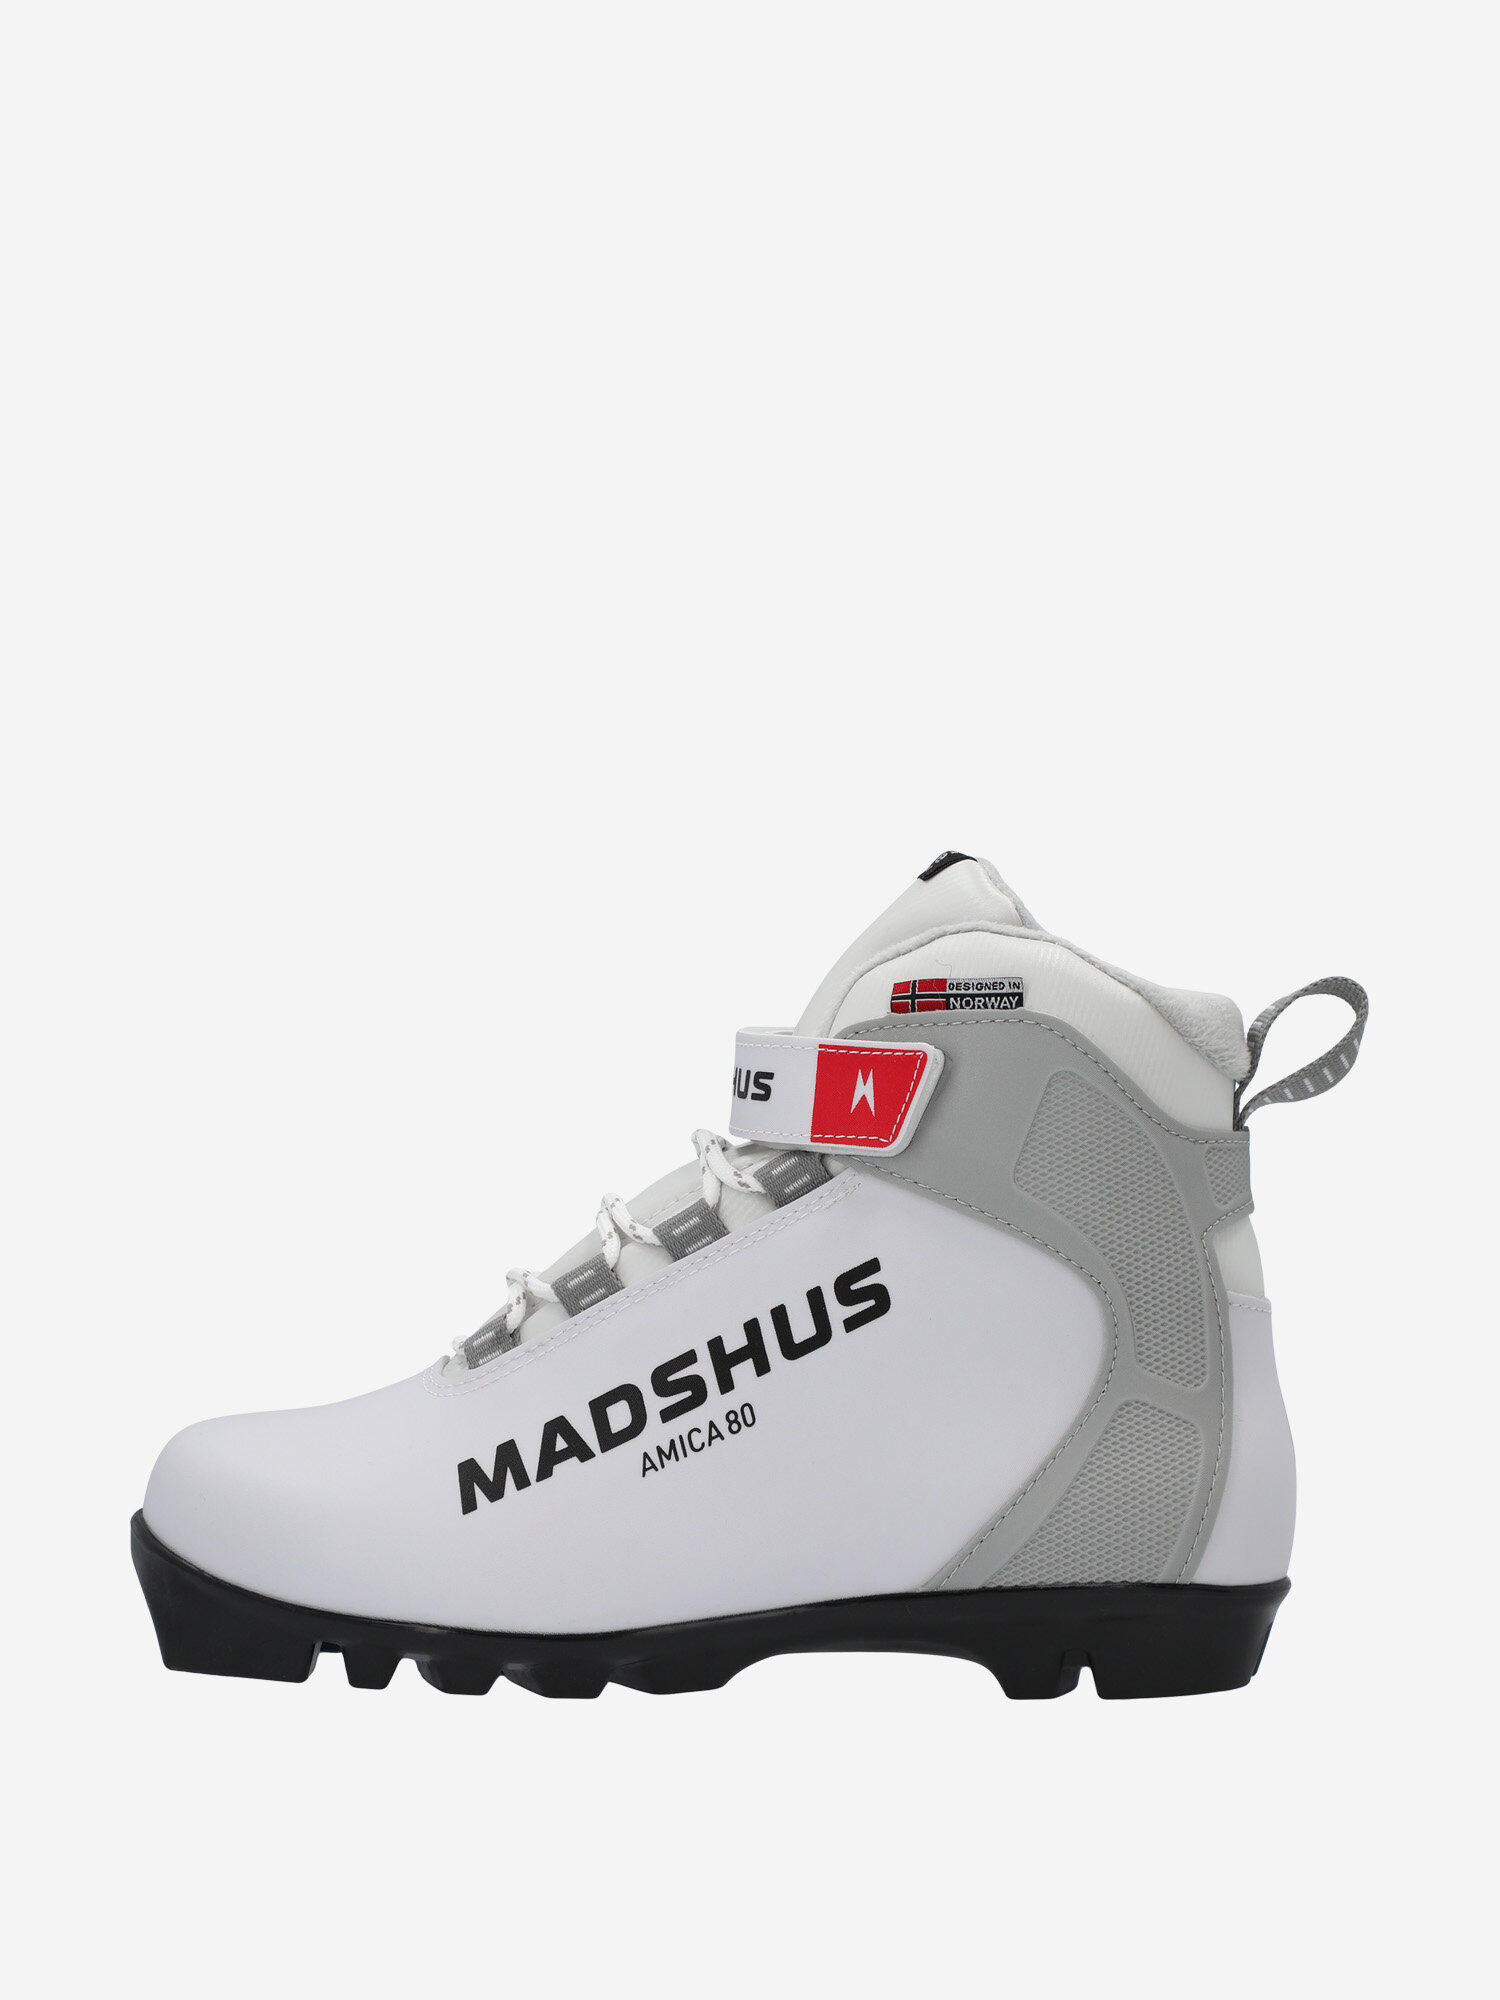 Ботинки для беговых лыж женские Madshus Amica 80, Белый - фото №1